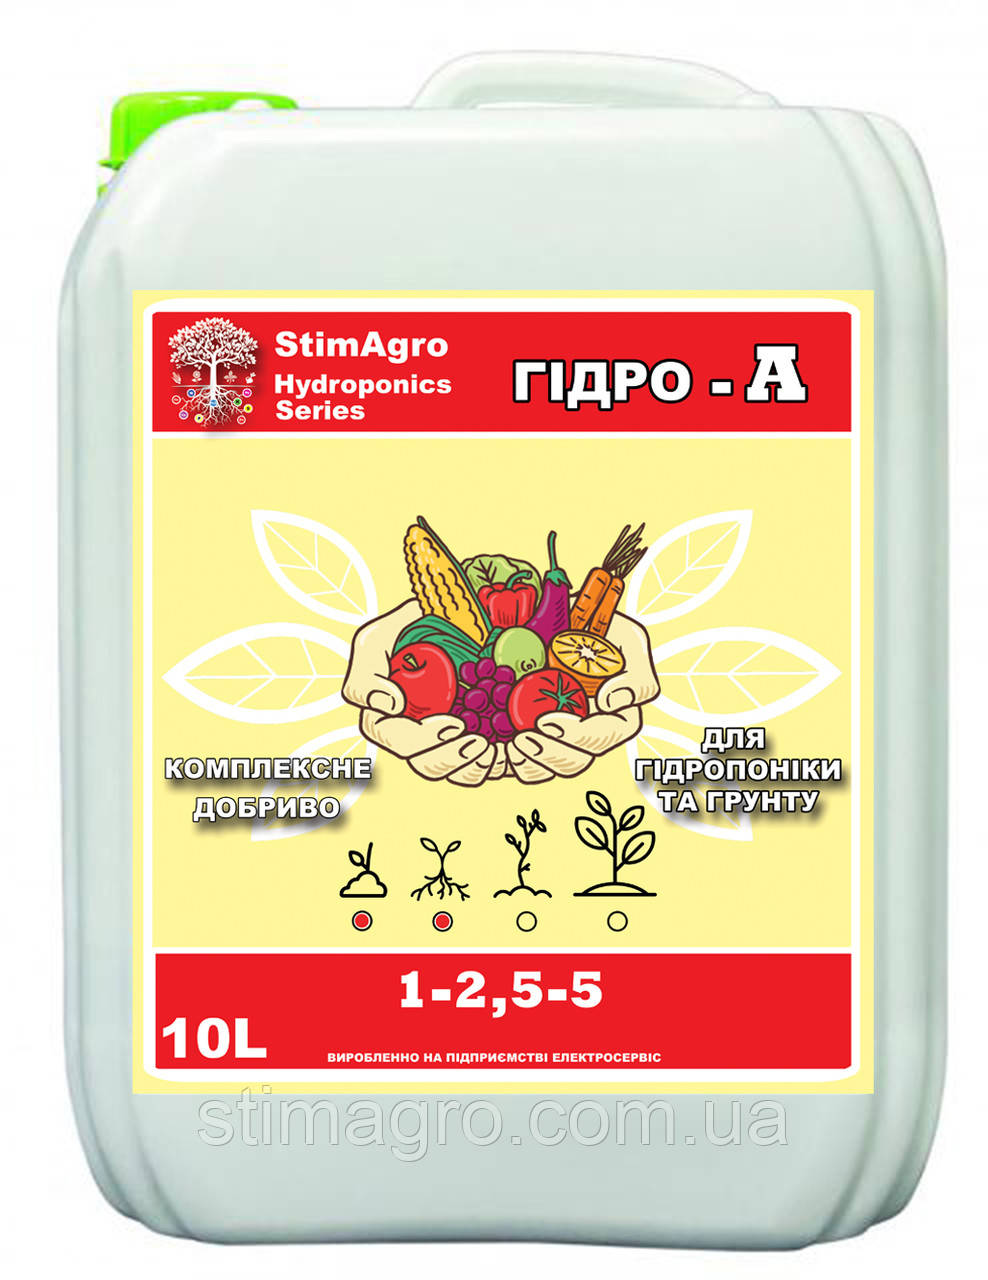 StimAgro добрива для гідропоніки та грунту ГІДРО-А 1-2,5-5 10L